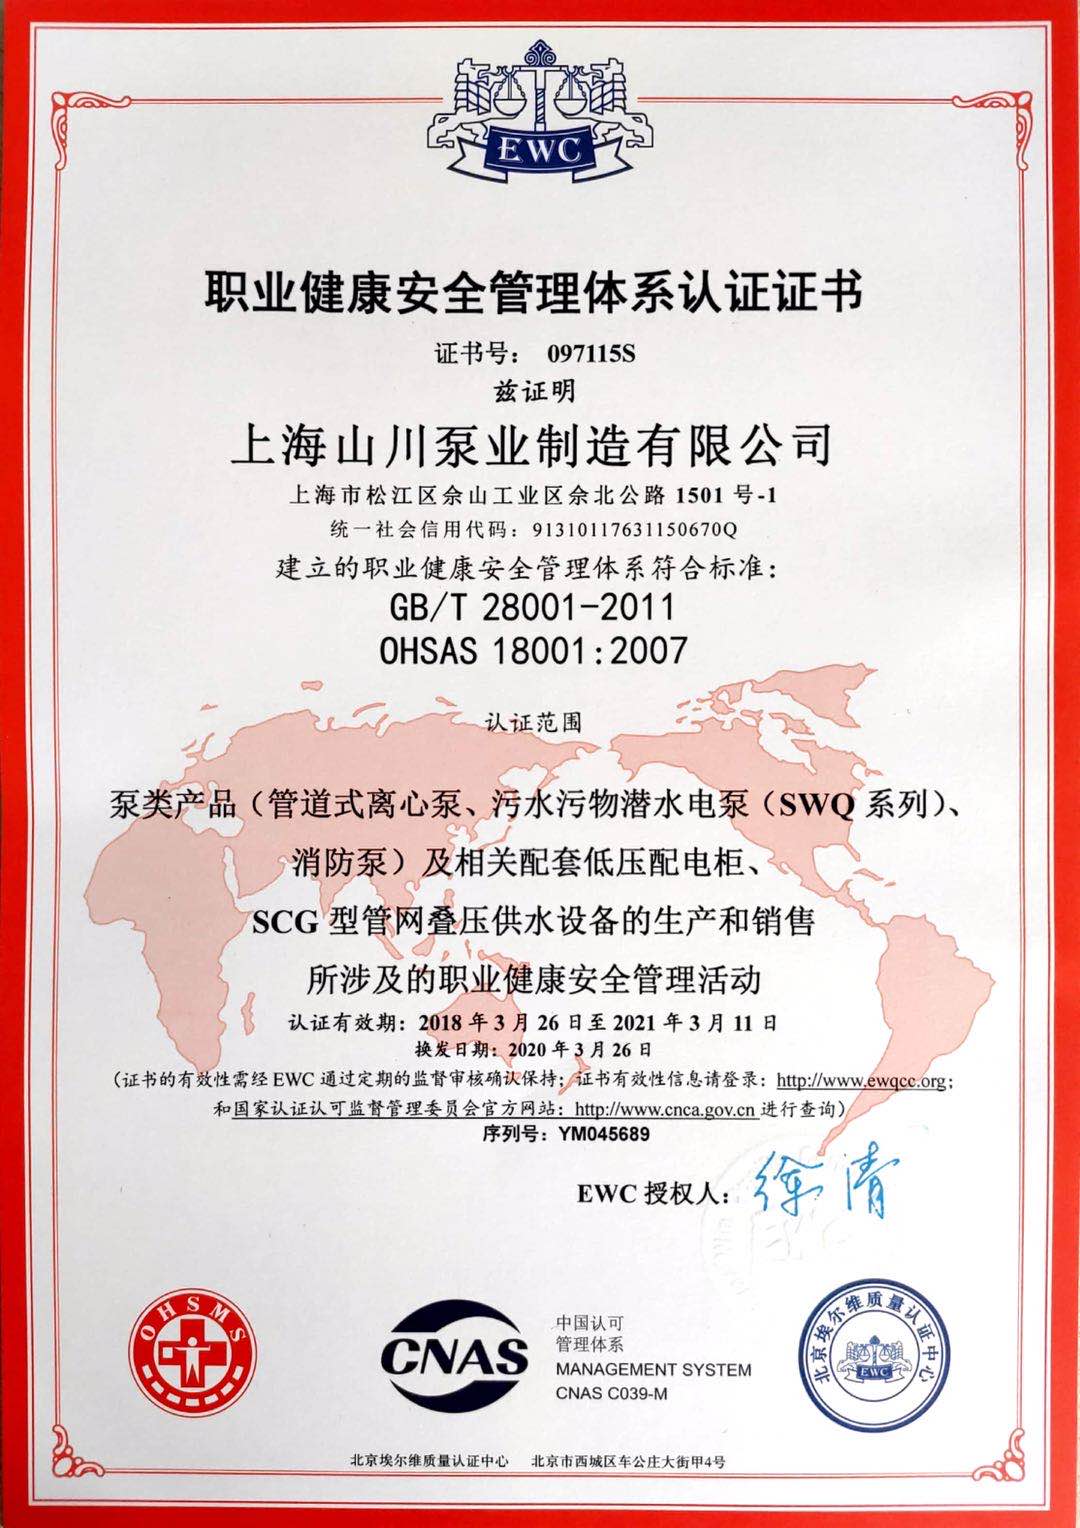 上海山川泵業制造有限公司 職業健康安全管理體系